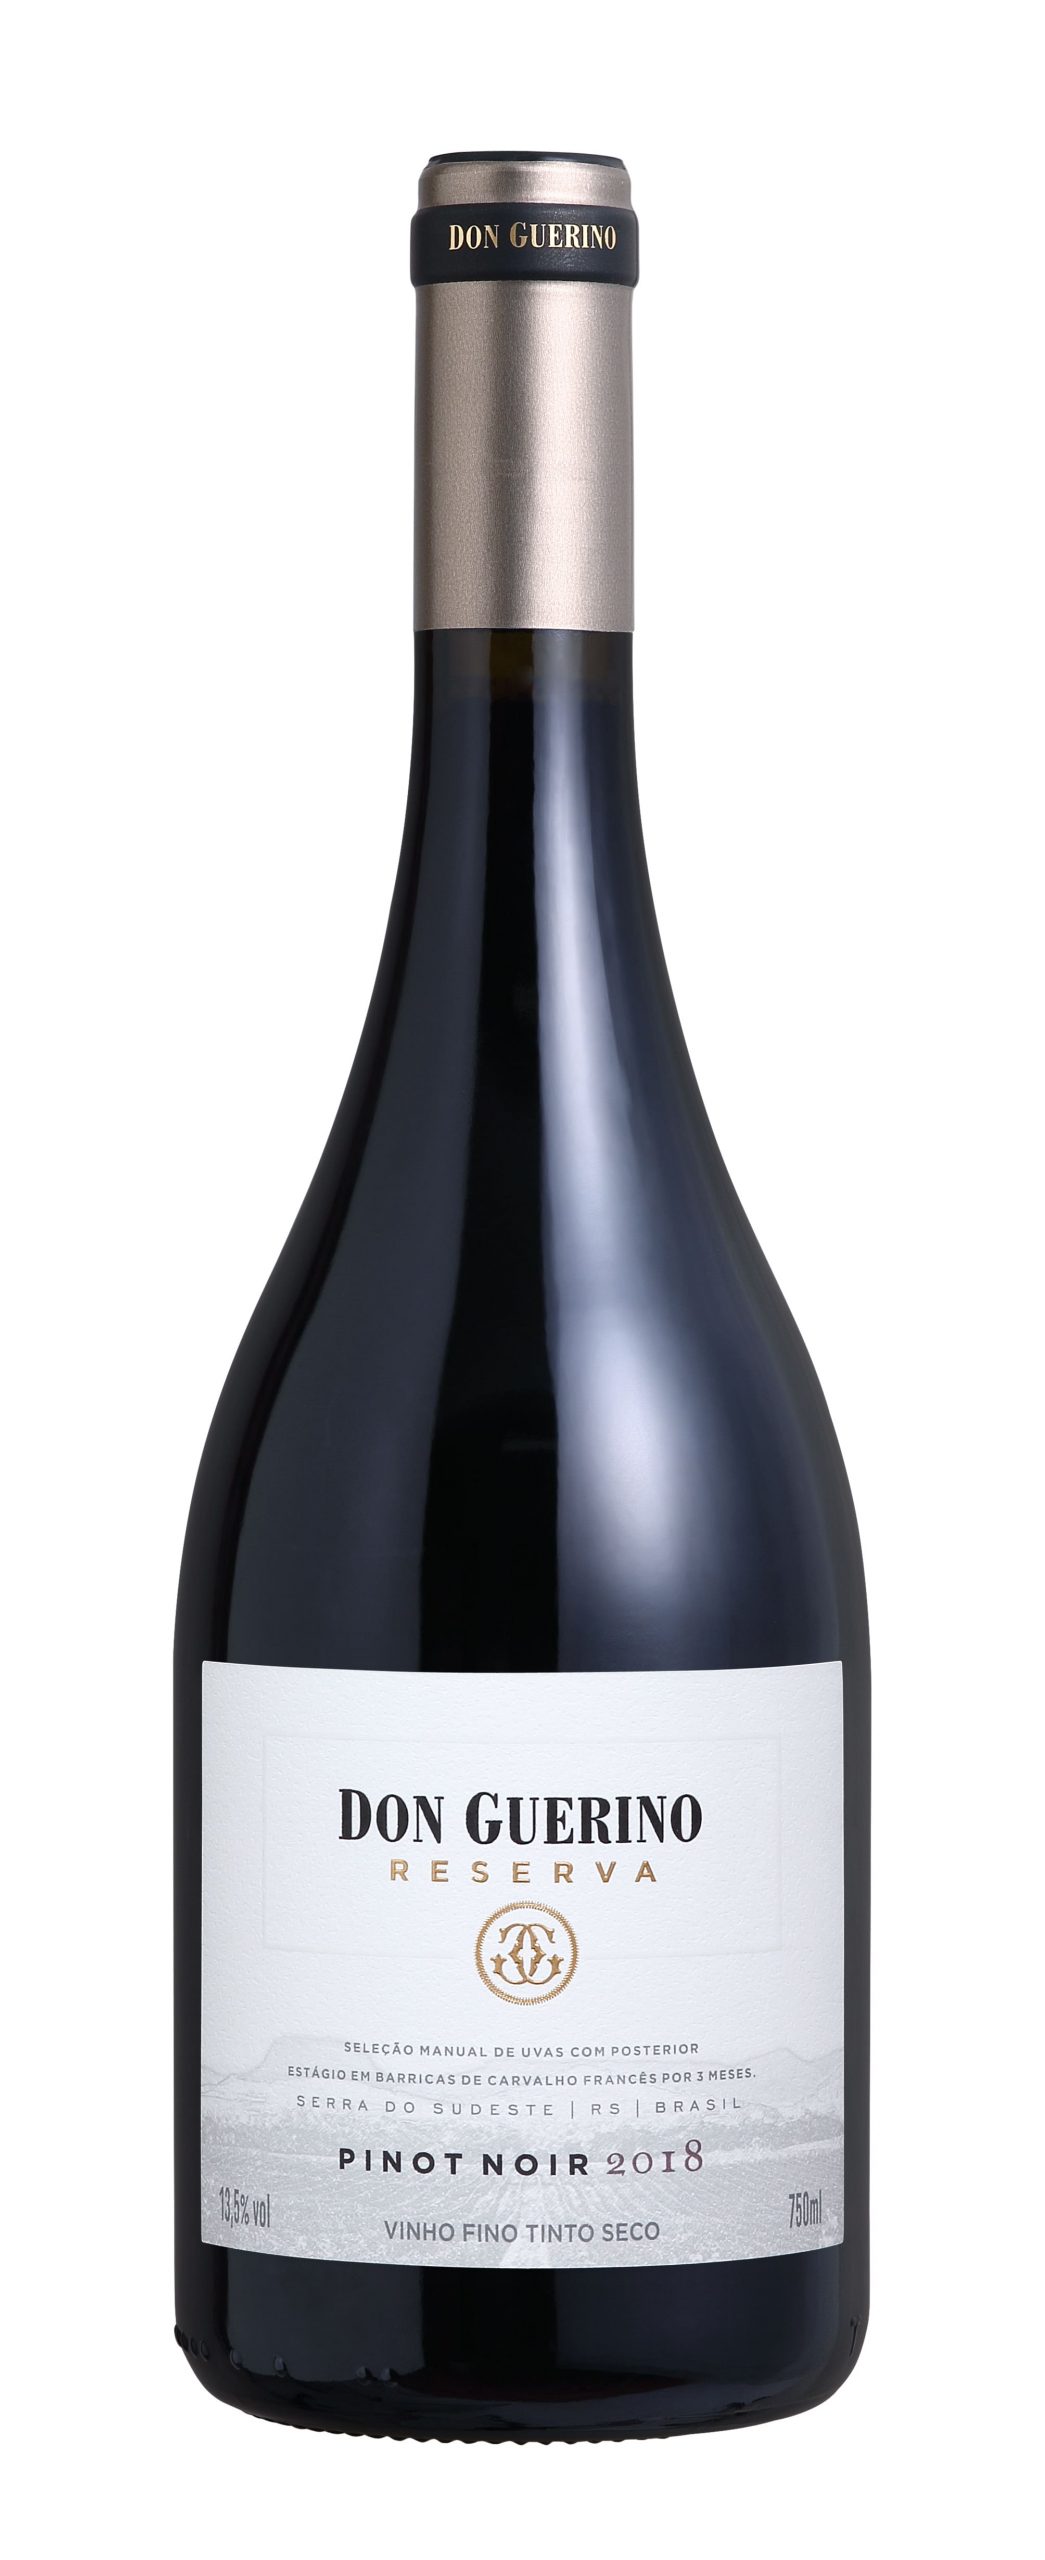 Garrafa de Vinho Tinto Fino Seco Pinot Noir Reserva Don Guerino